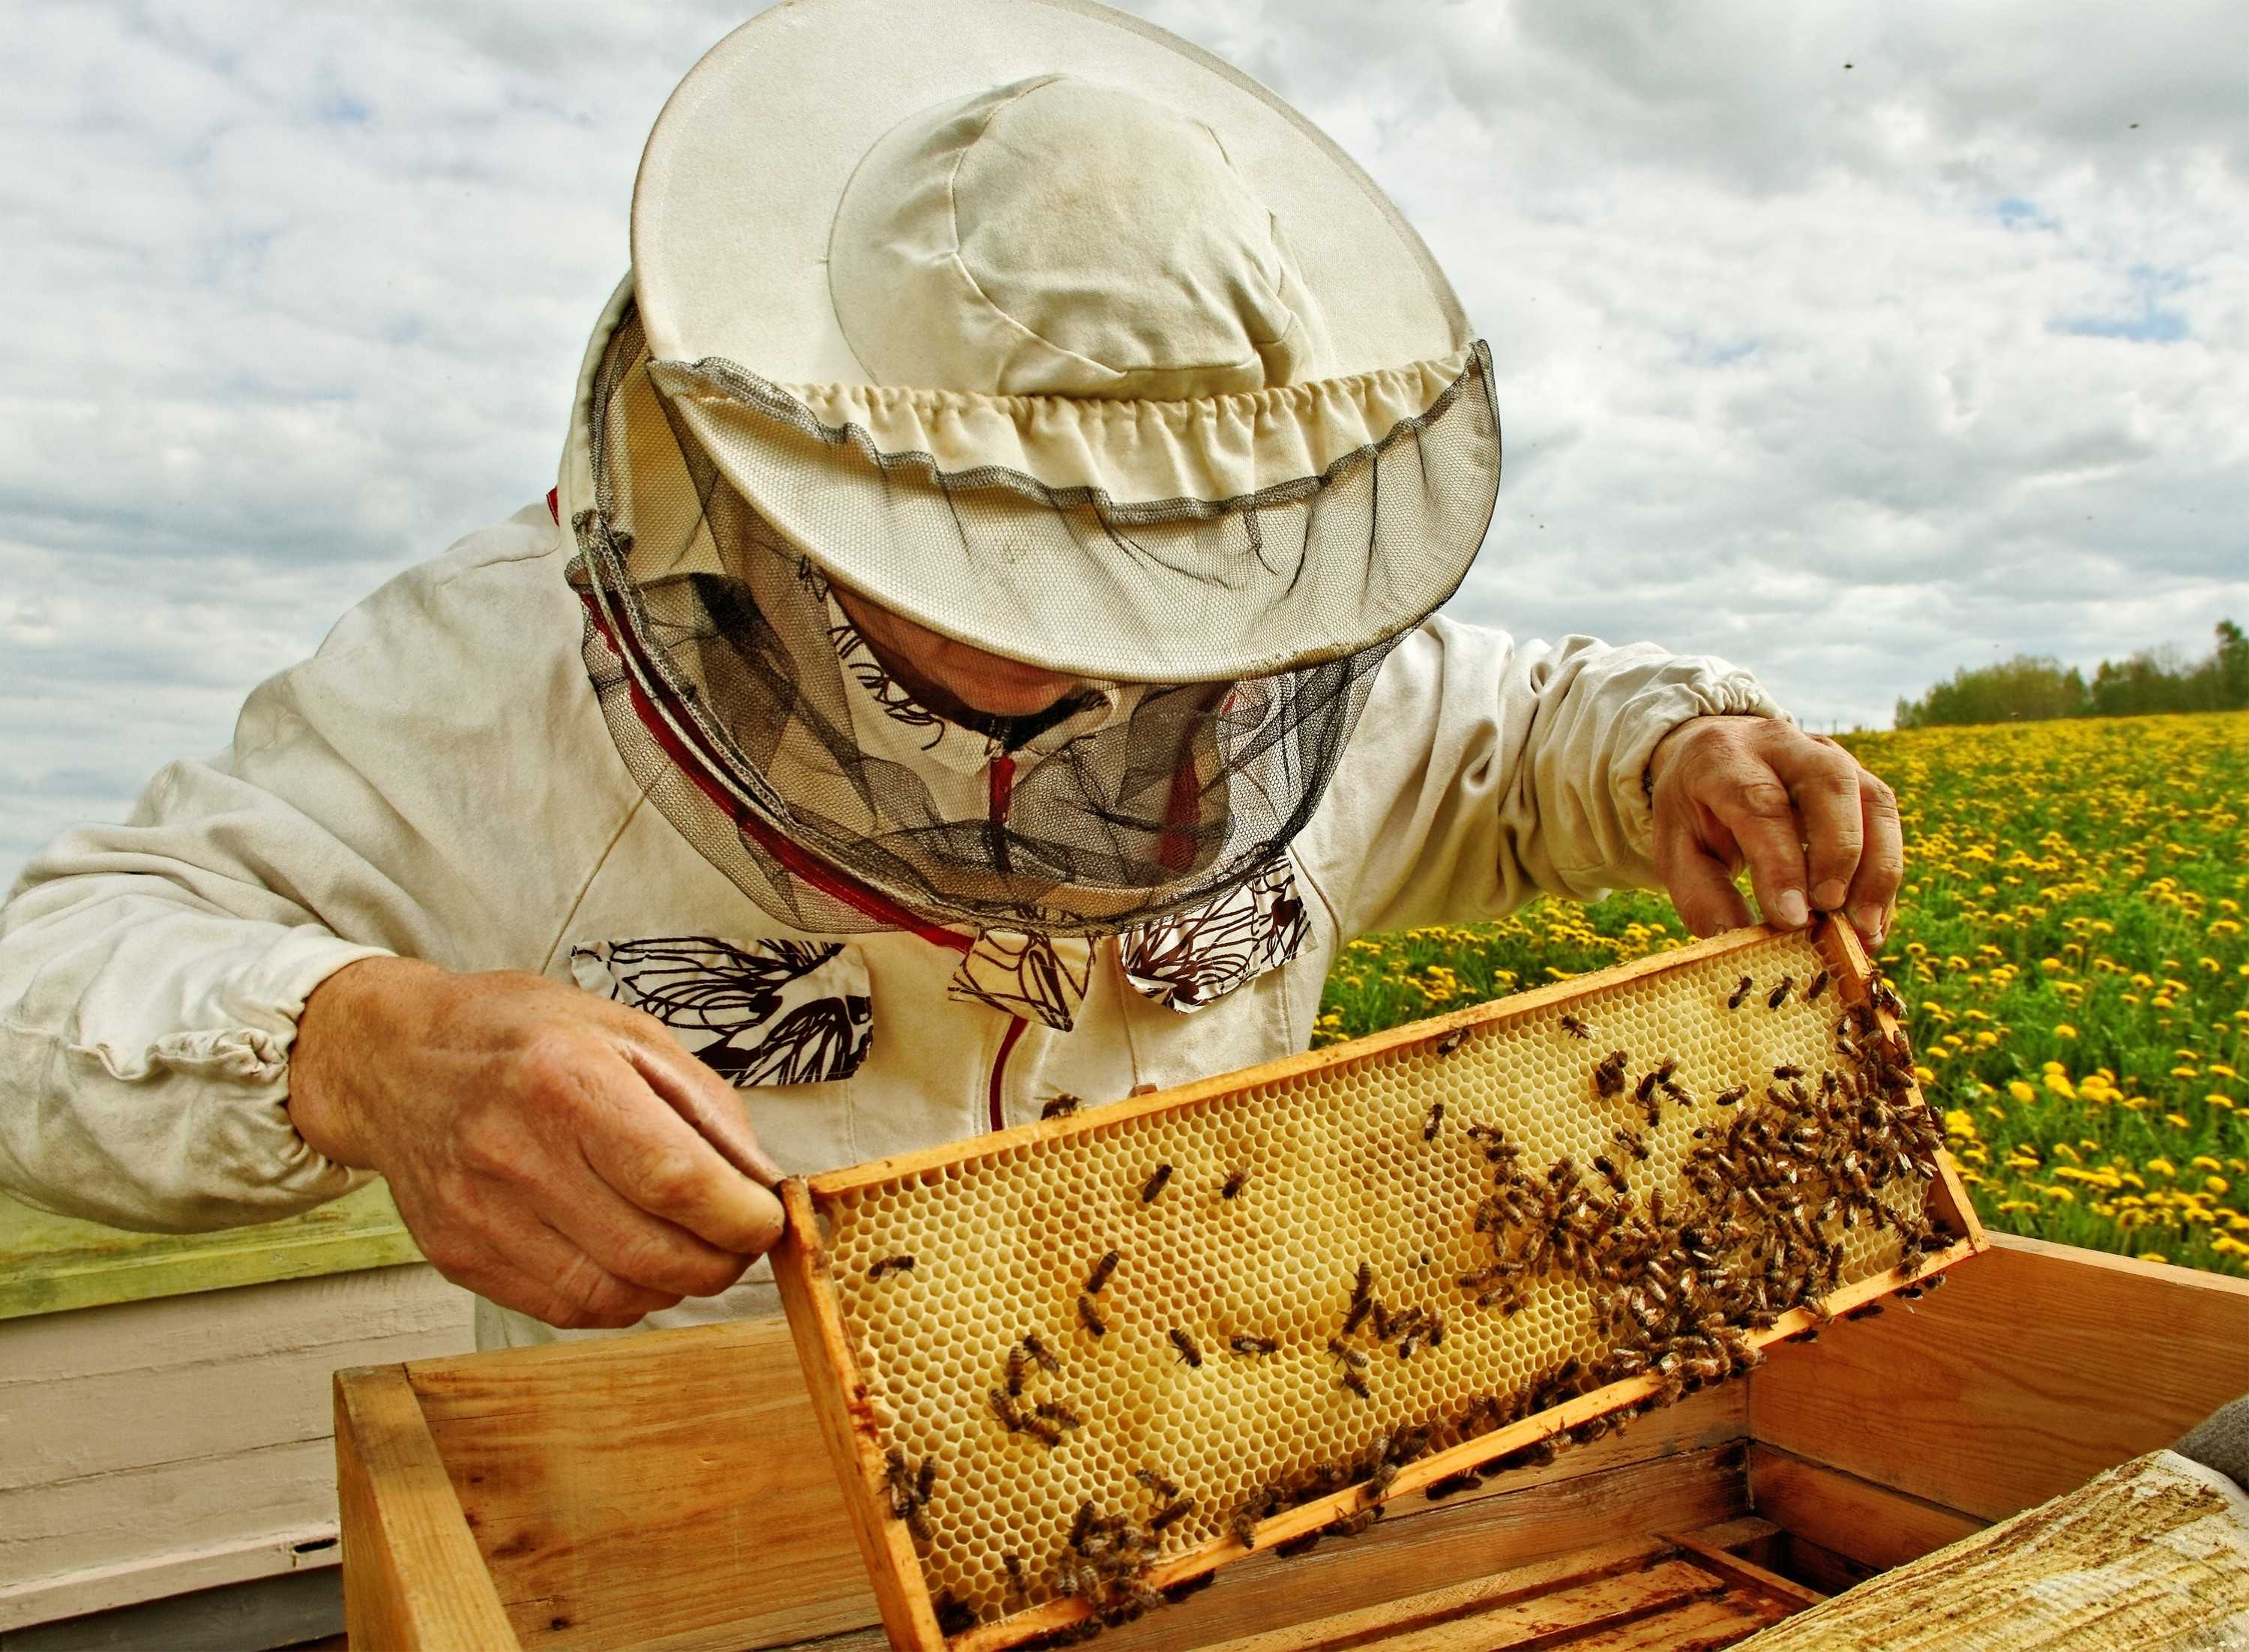 Стамеска пчеловода своими руками чертежи